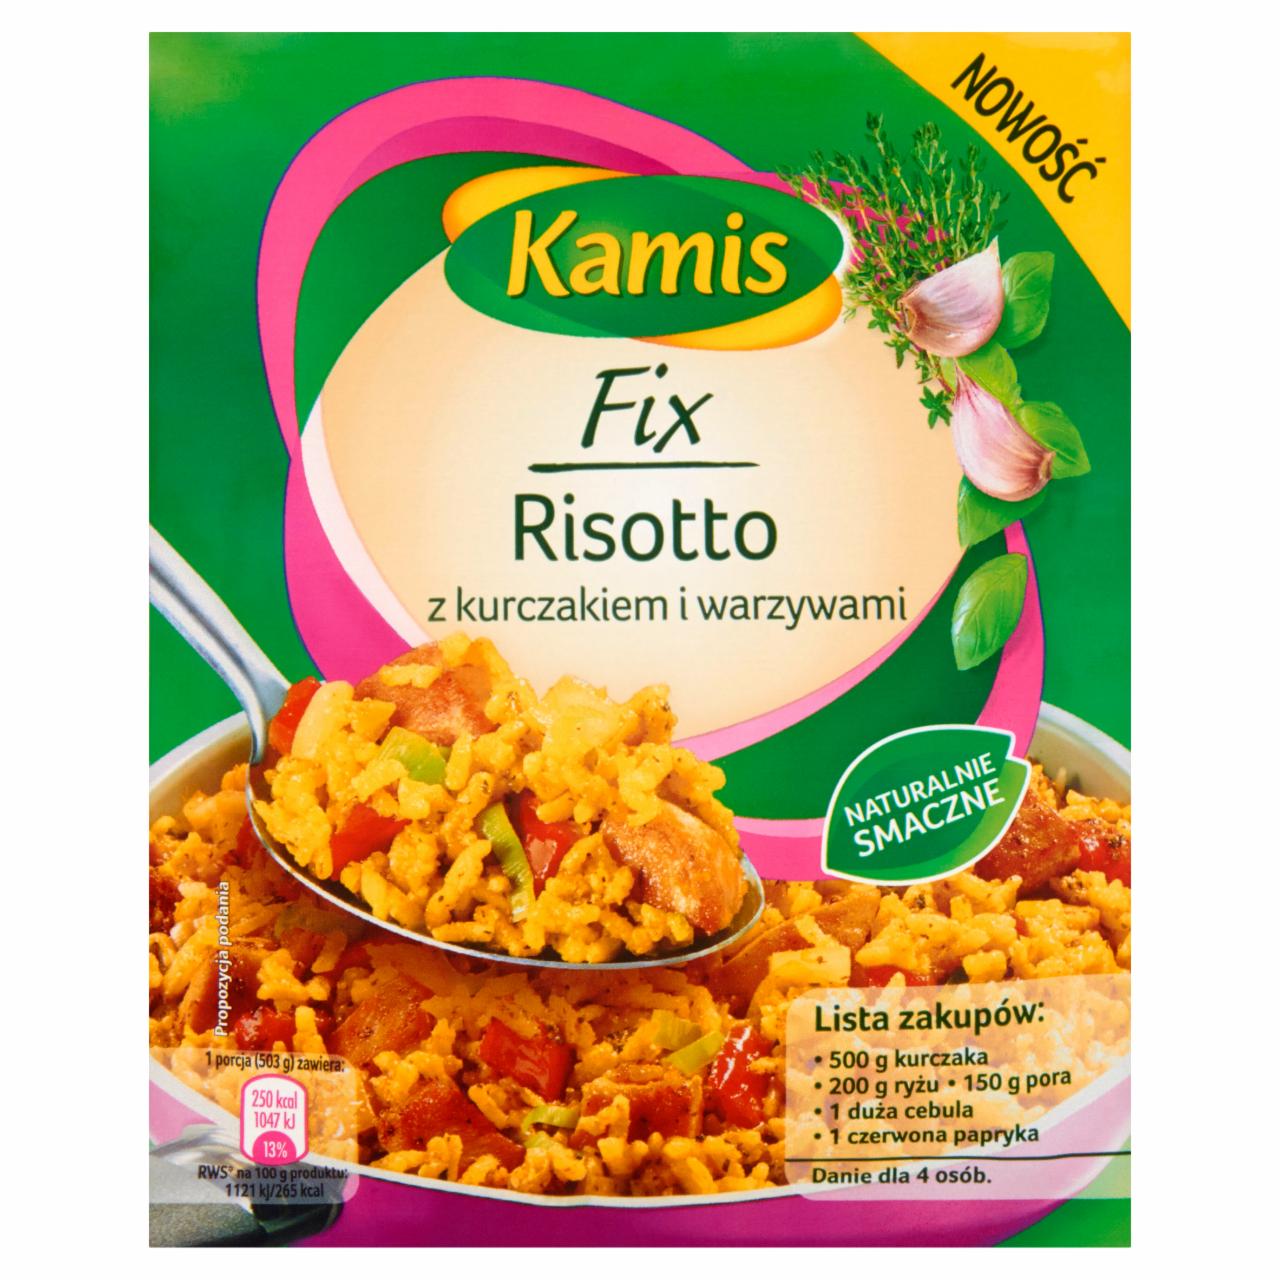 Zdjęcia - Kamis Fix Risotto z kurczakiem i warzywami 40 g